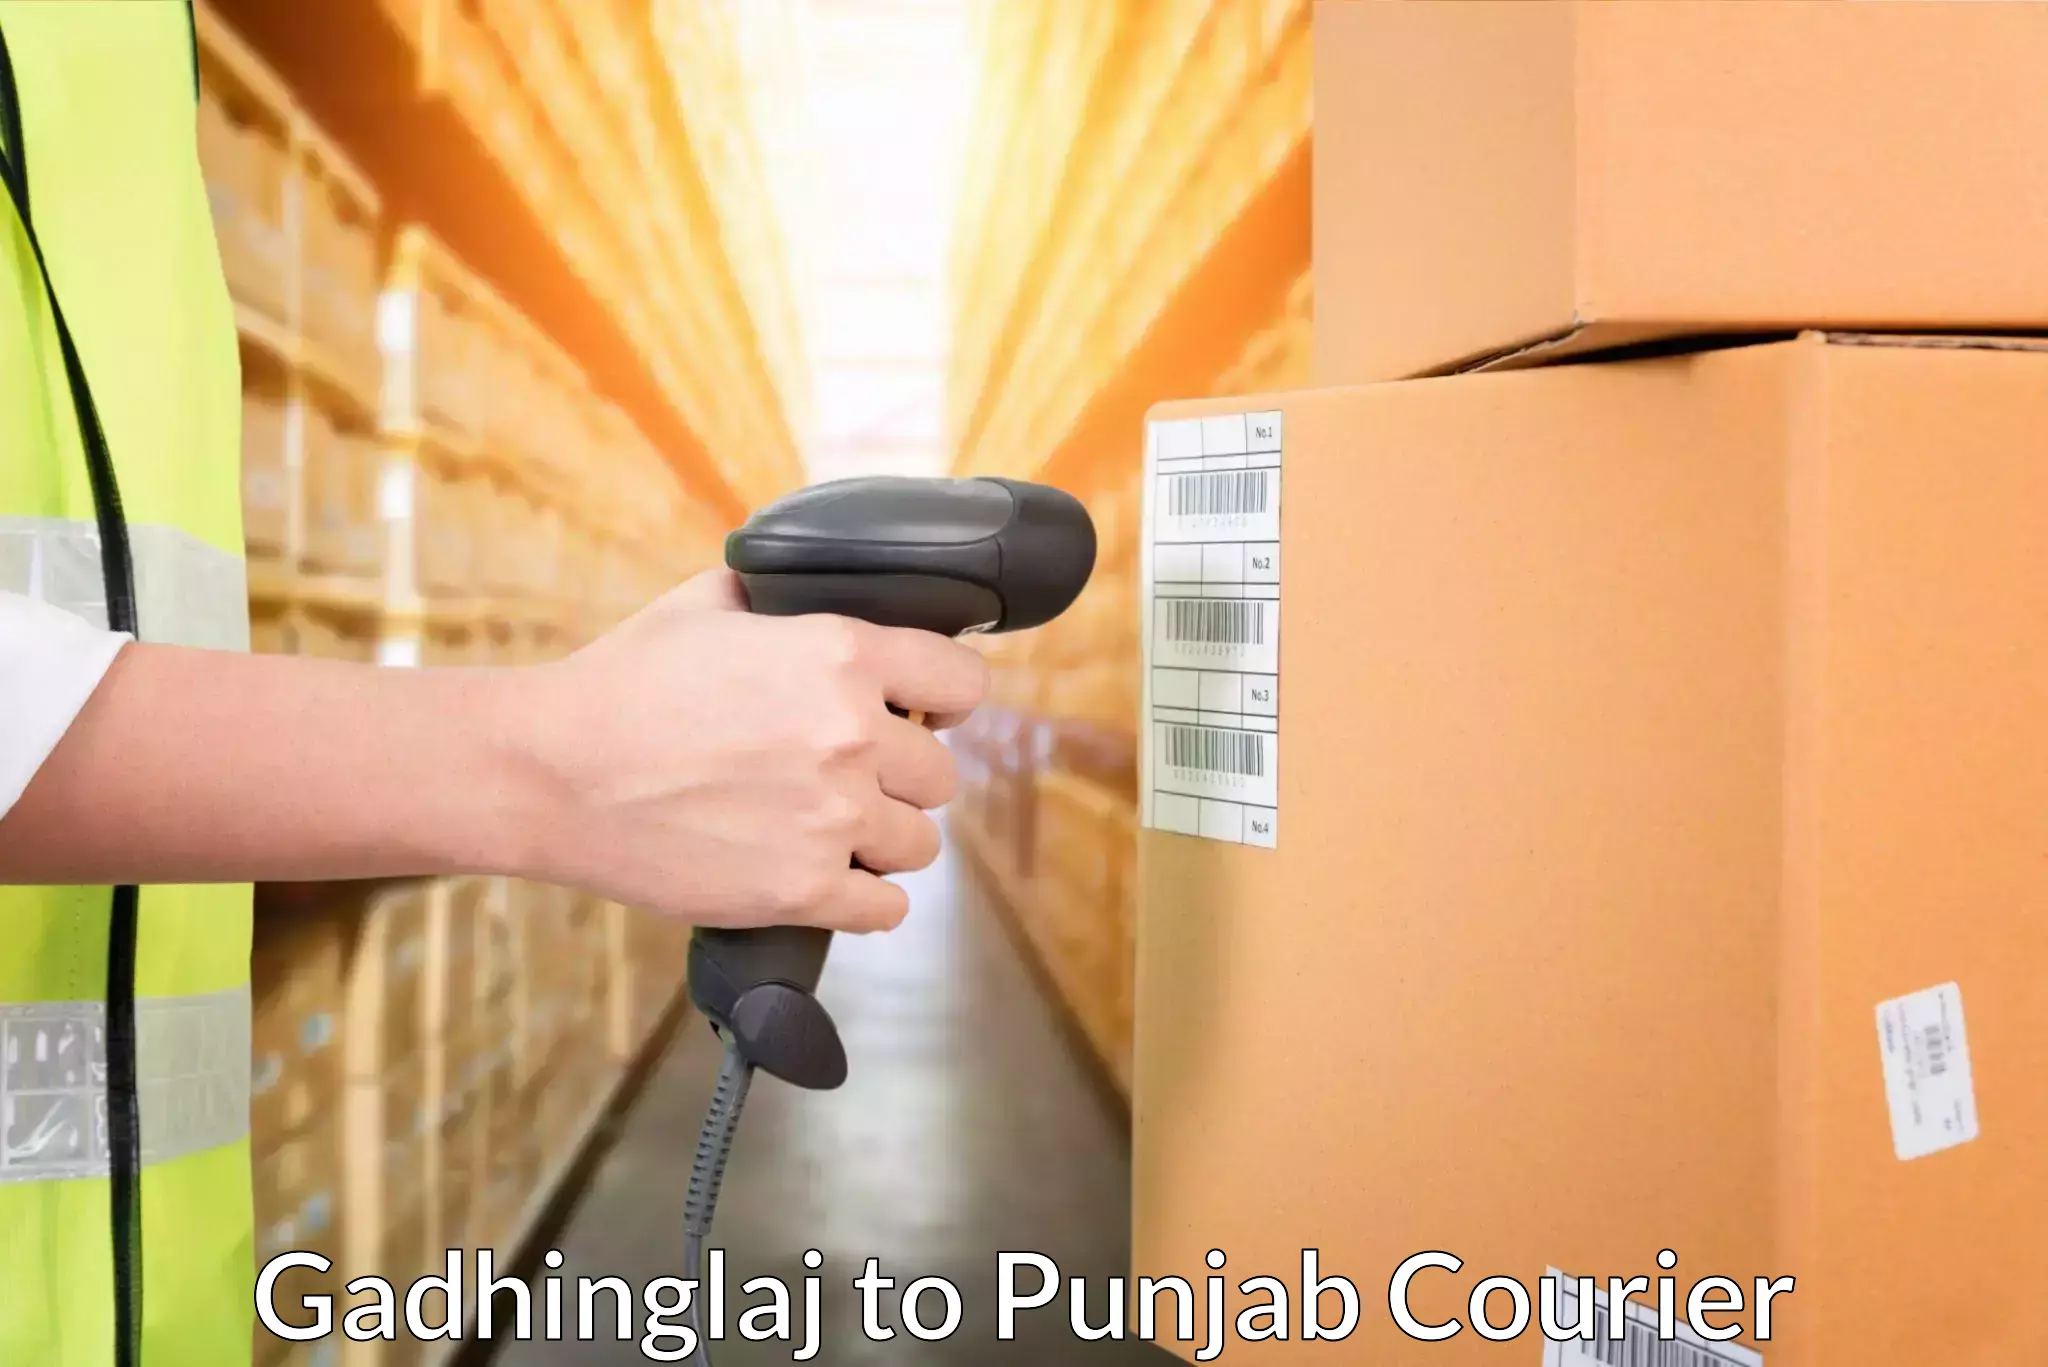 Cargo courier service Gadhinglaj to Anandpur Sahib